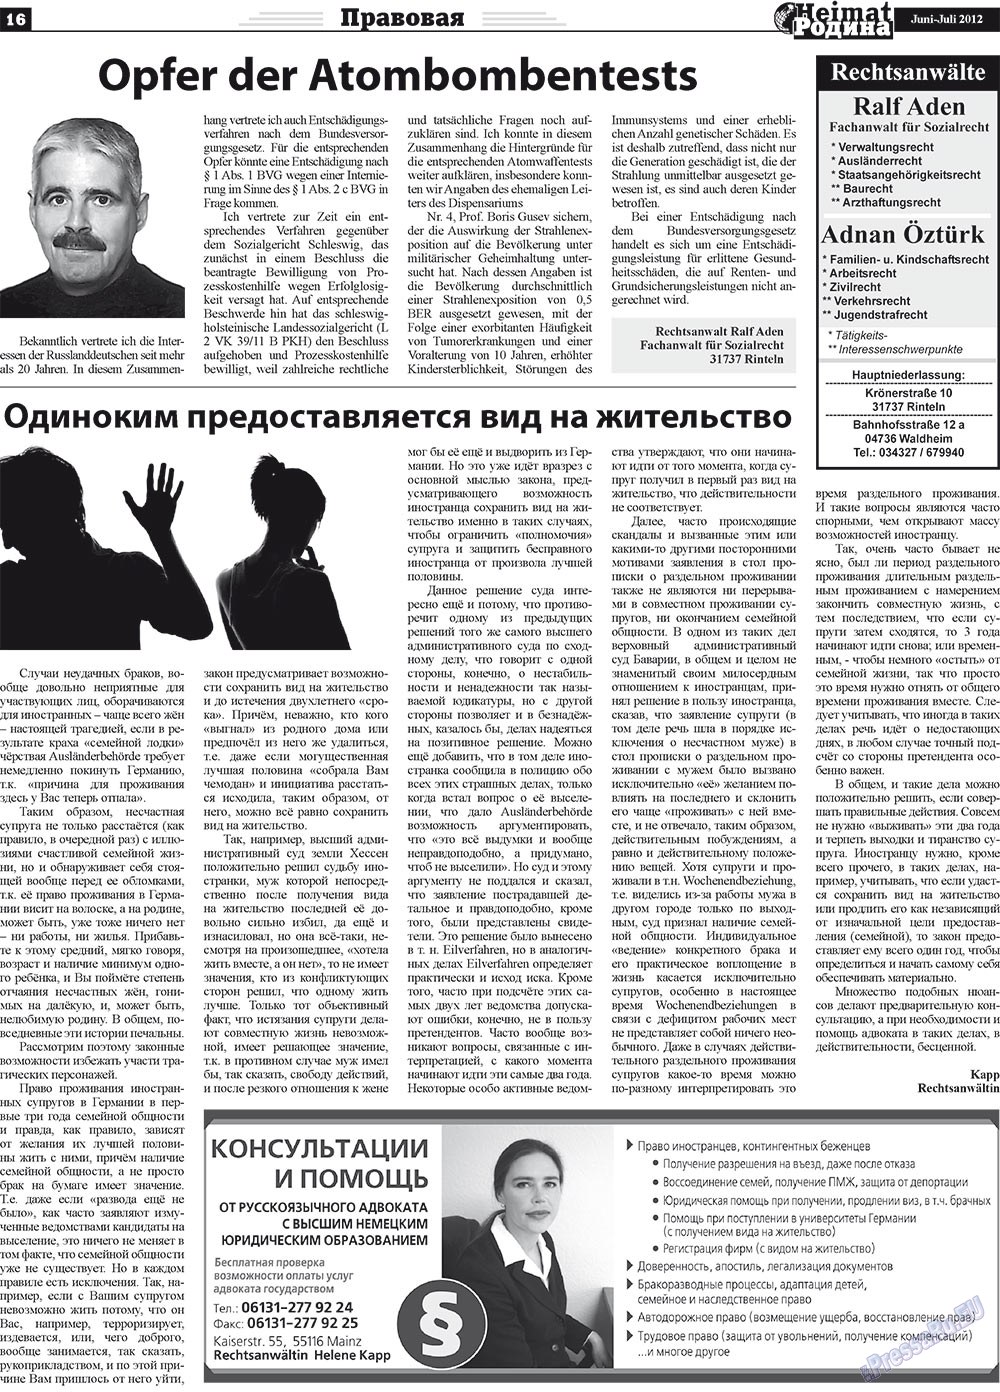 Heimat-Родина (газета). 2012 год, номер 5, стр. 16